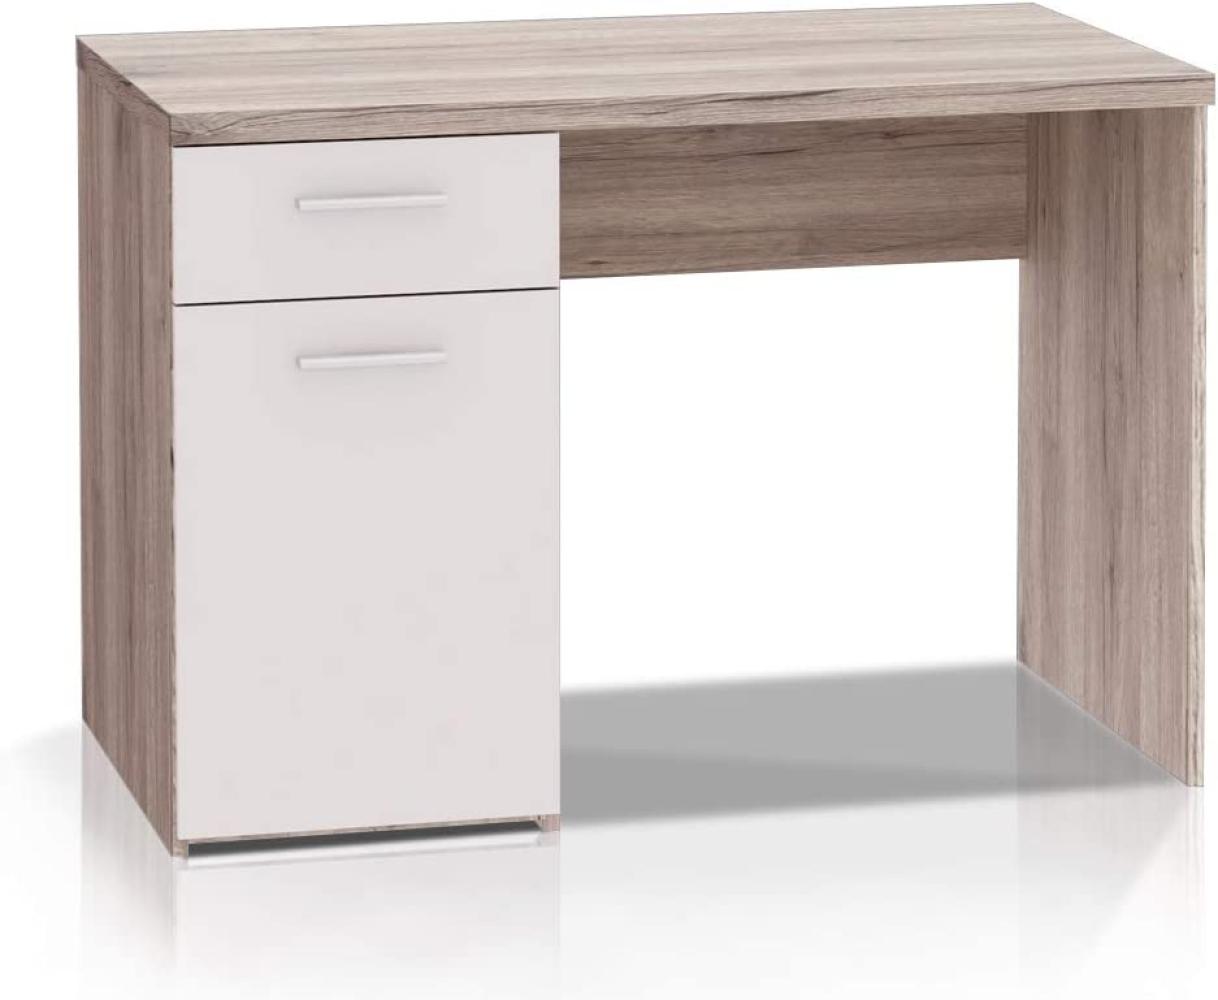 'Wisal' Schreibtisch mit Schublade, Sandeiche/ weiß, 110 x 77 x 60 cm Bild 1